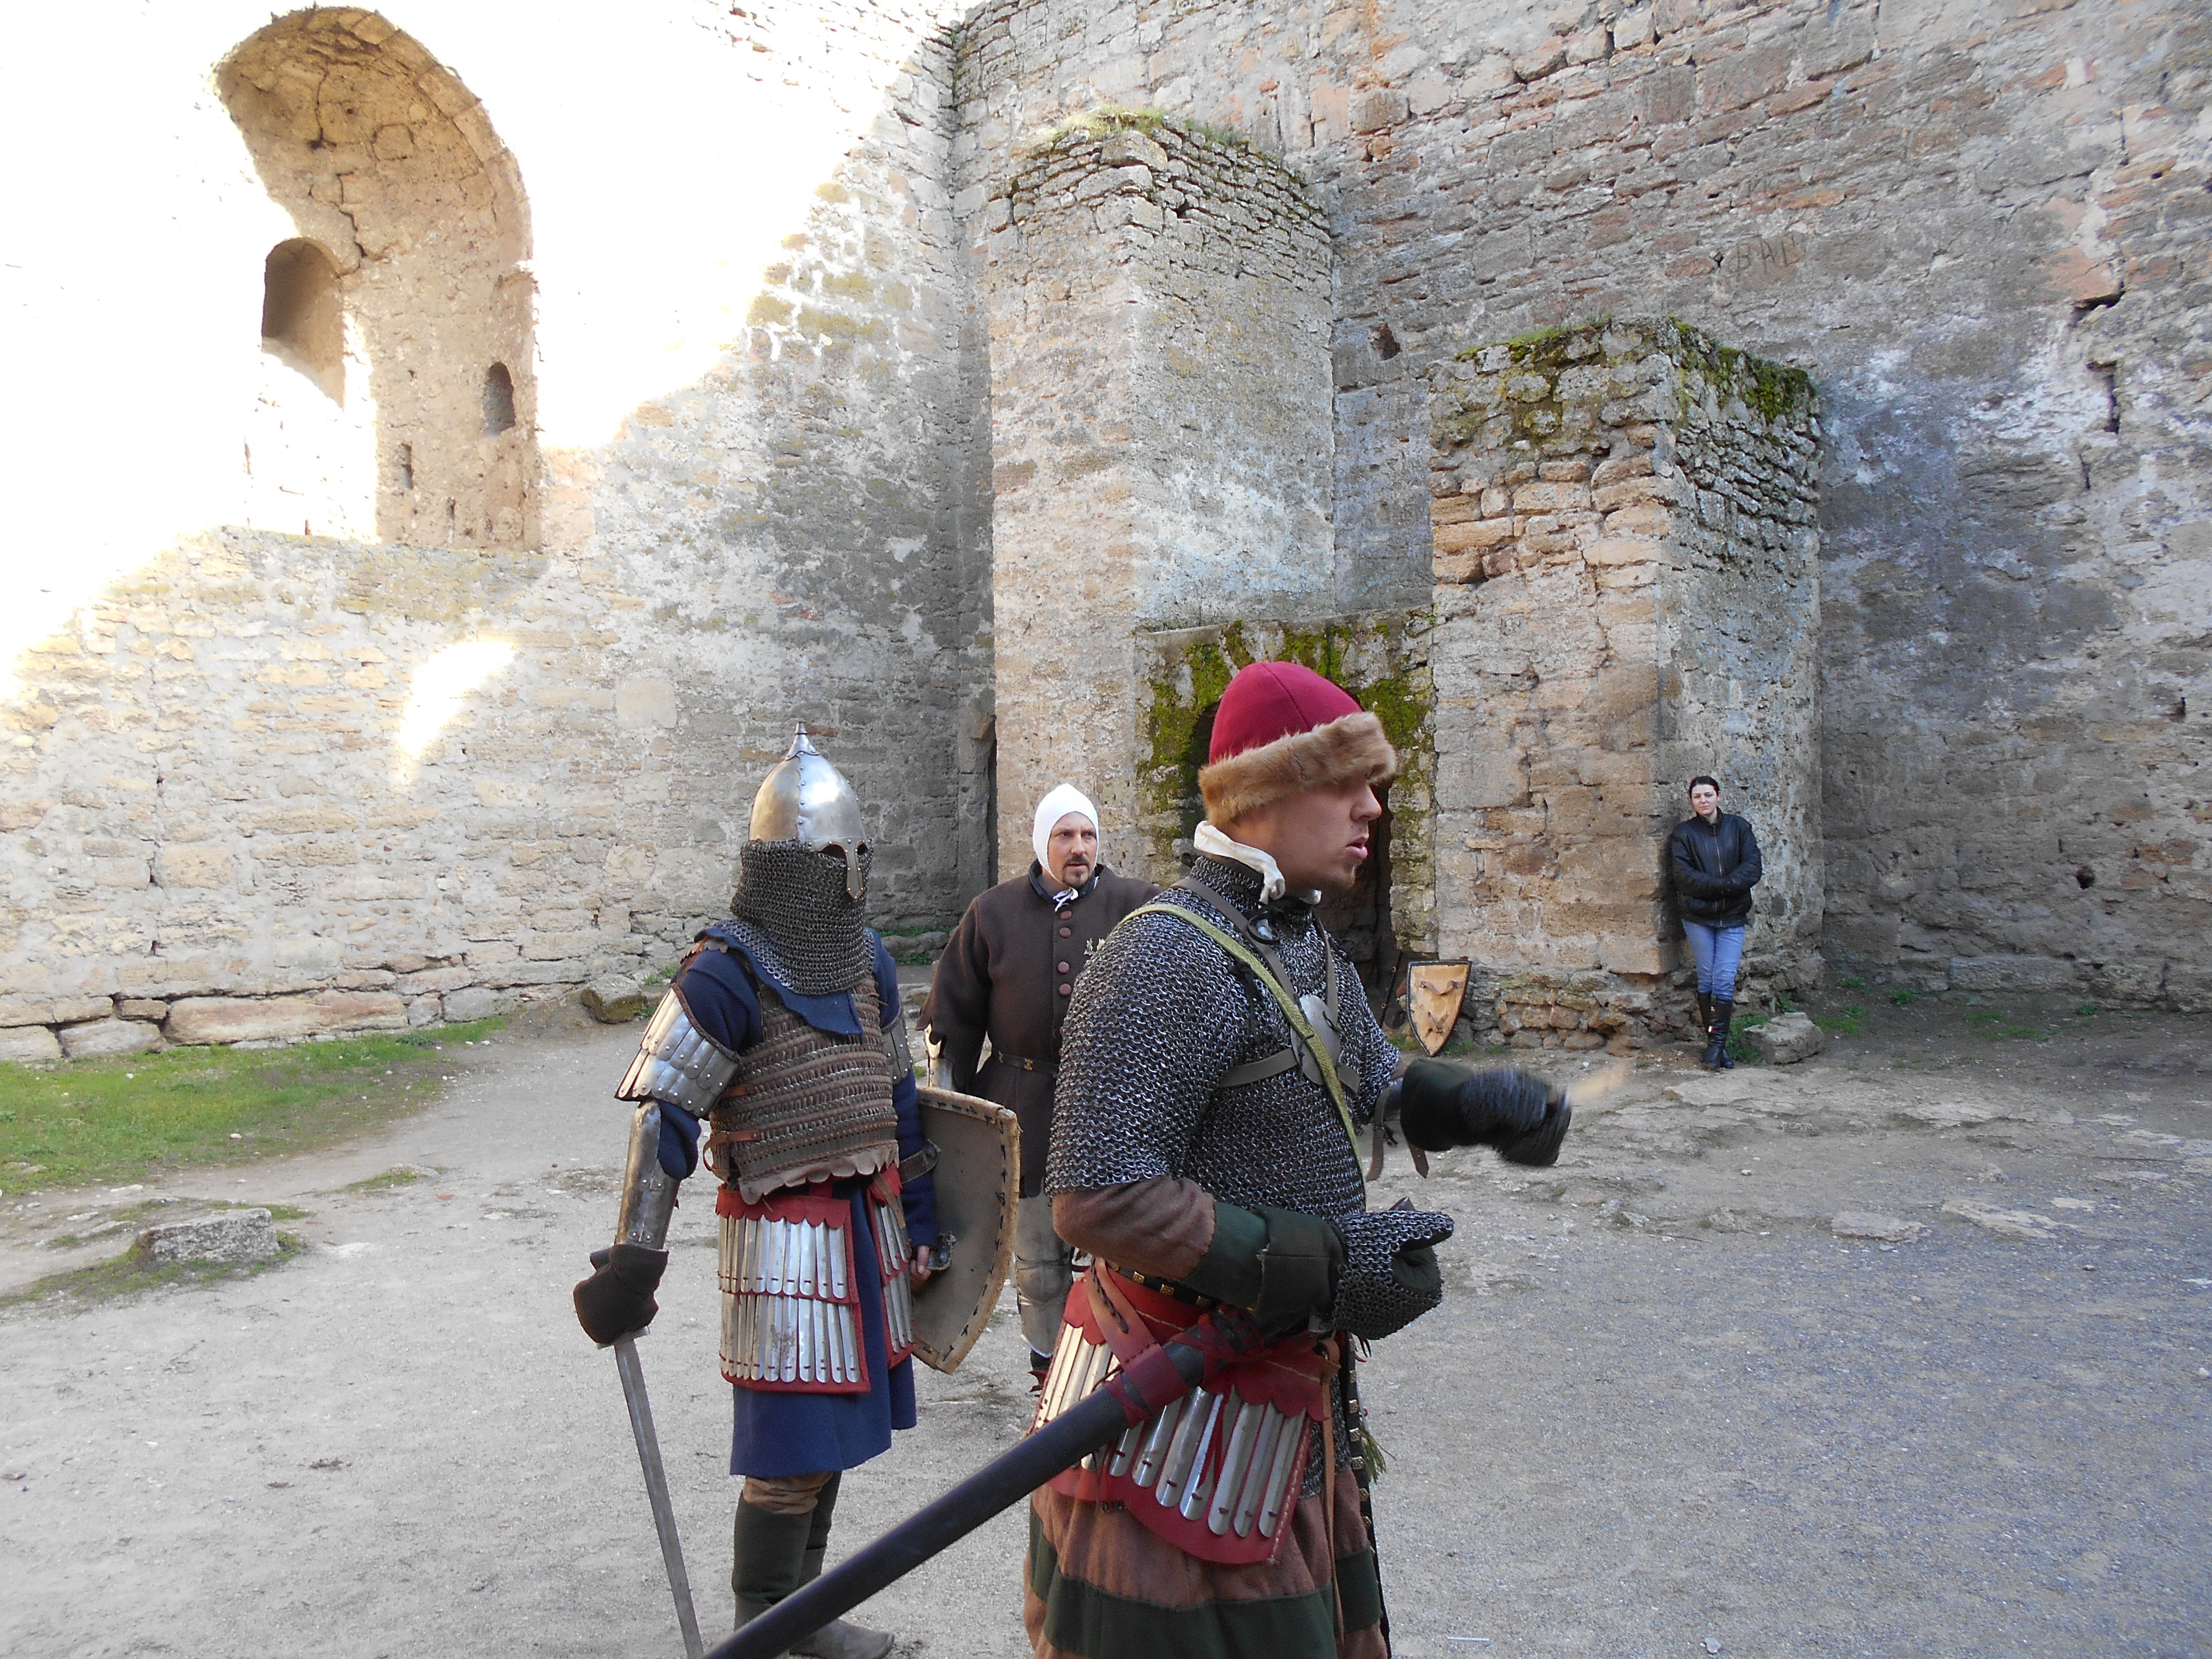 Аккерманська фортеця оживає, коли члени клубу історичної реконструкції влаштовують рицарські бої. Фото автора